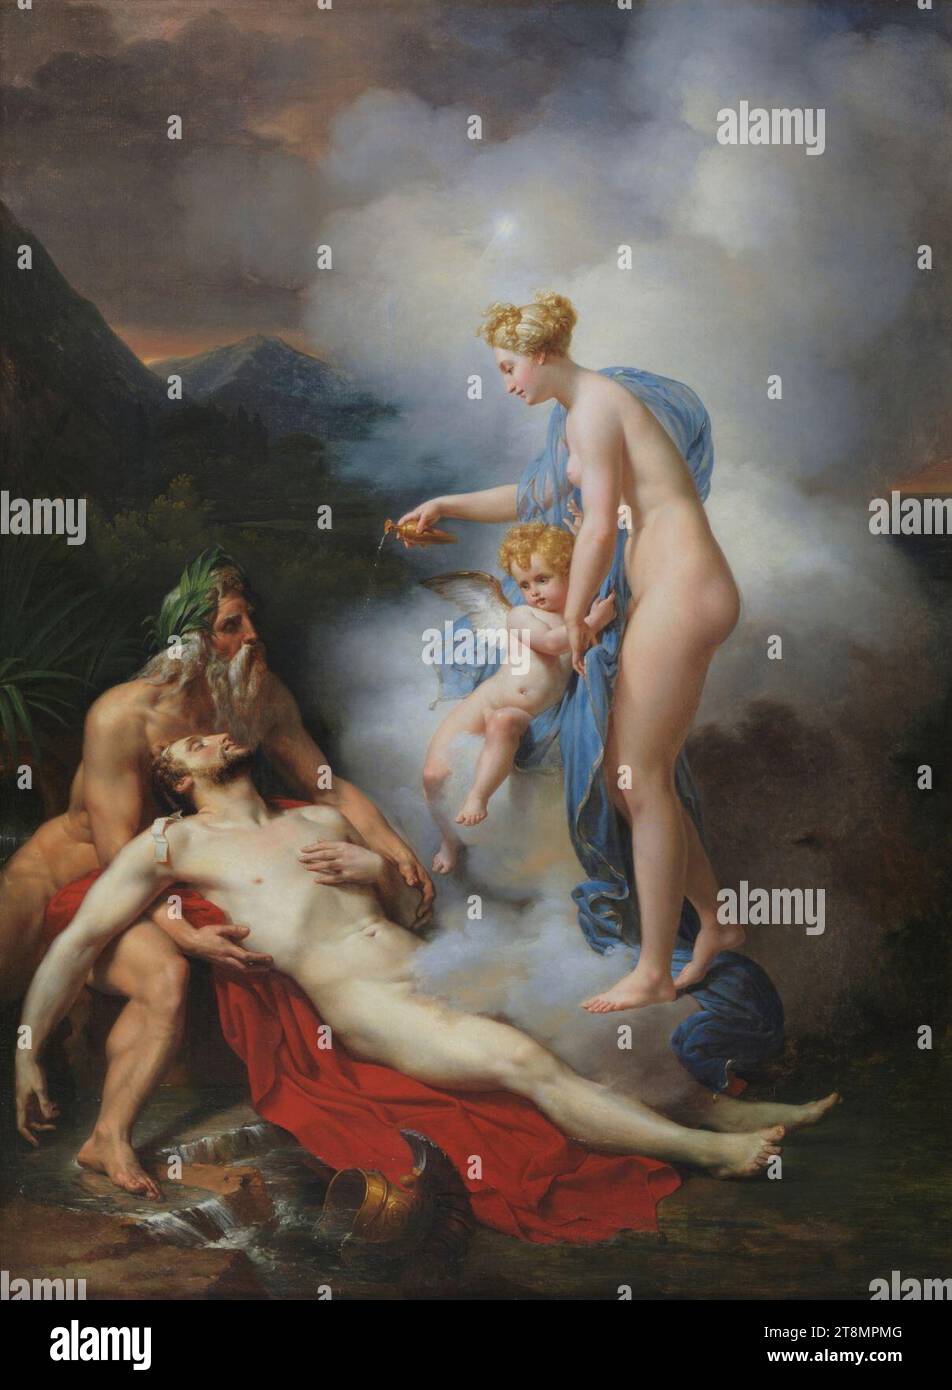 Venus curando a Eneas (Blondel). Stock Photo